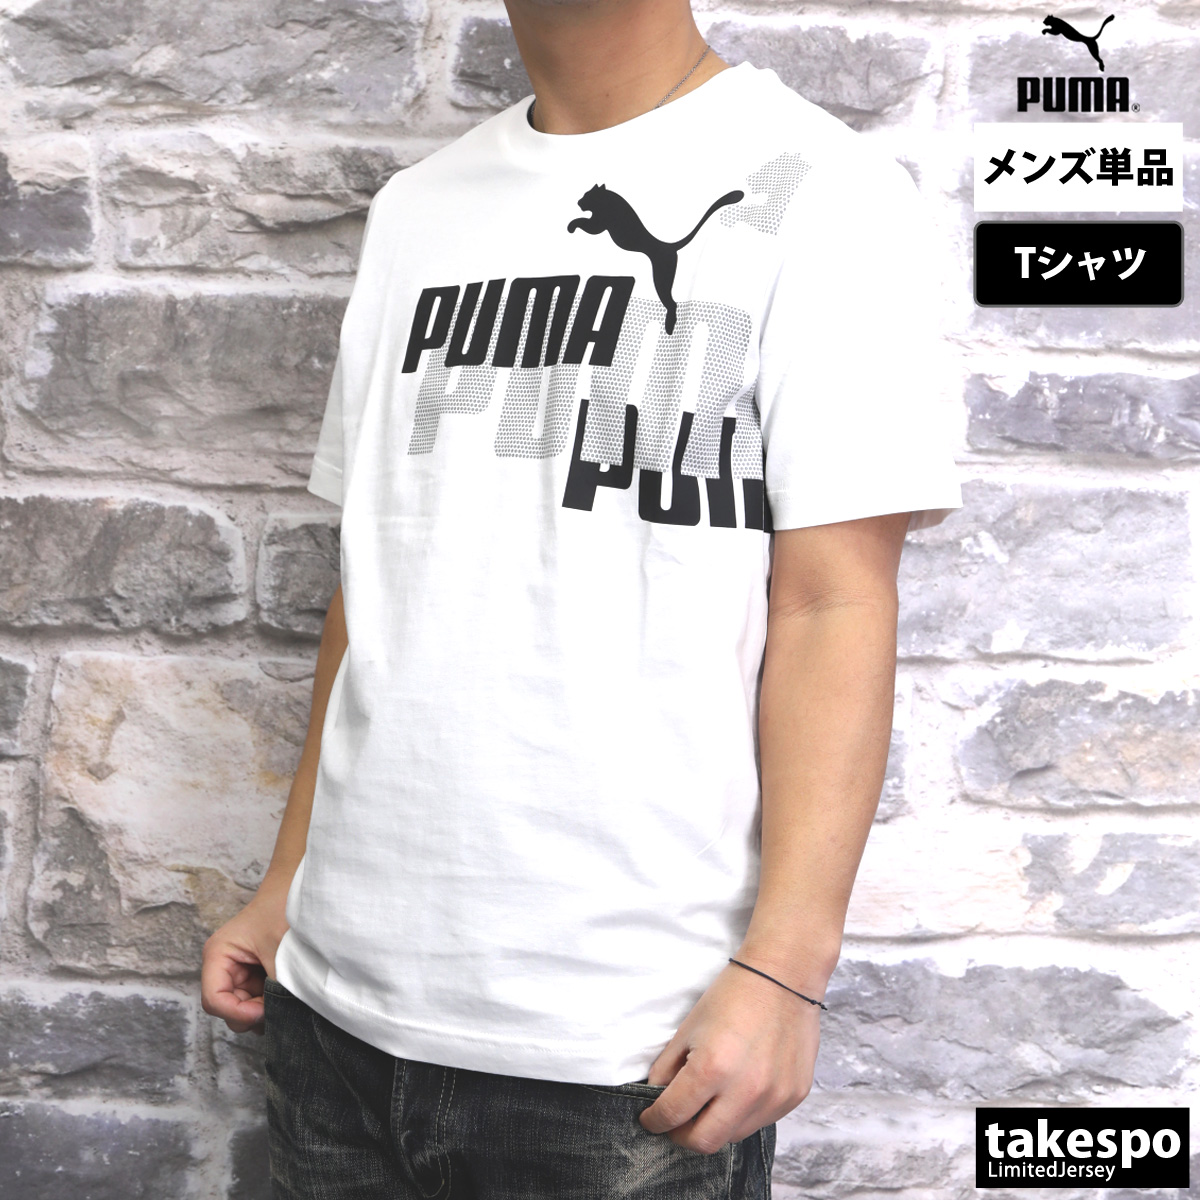 PUMA Tシャツ Mサイズ - 通販 - guianegro.com.br